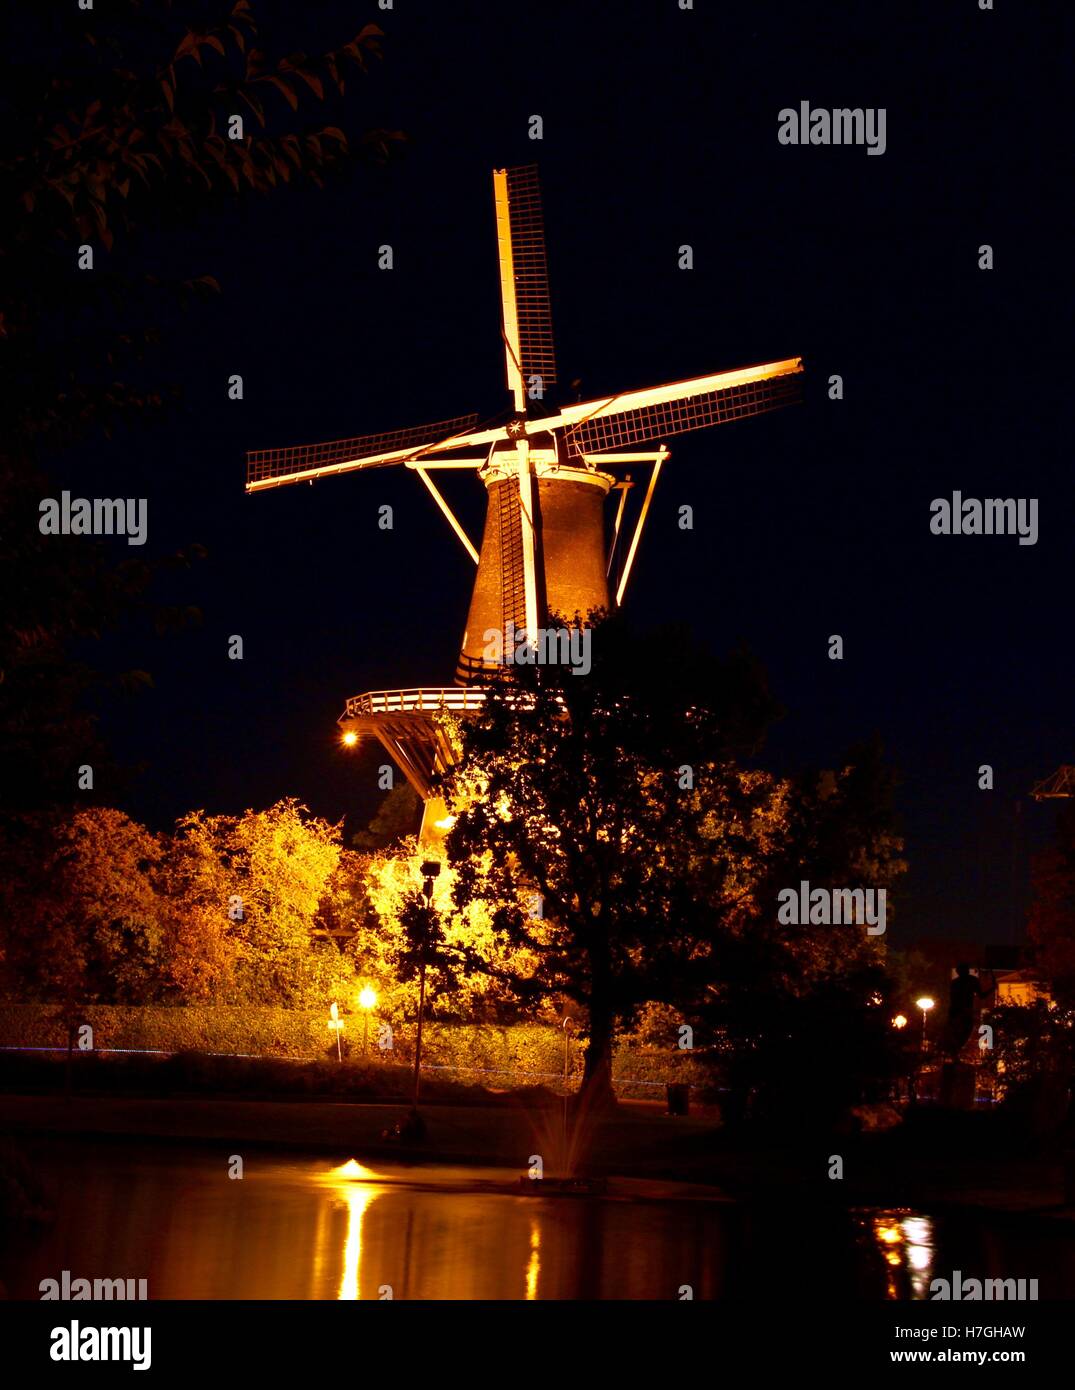 Die Molen de Valk Windmühle, Leiden, Niederlande in der Nacht Stockfoto